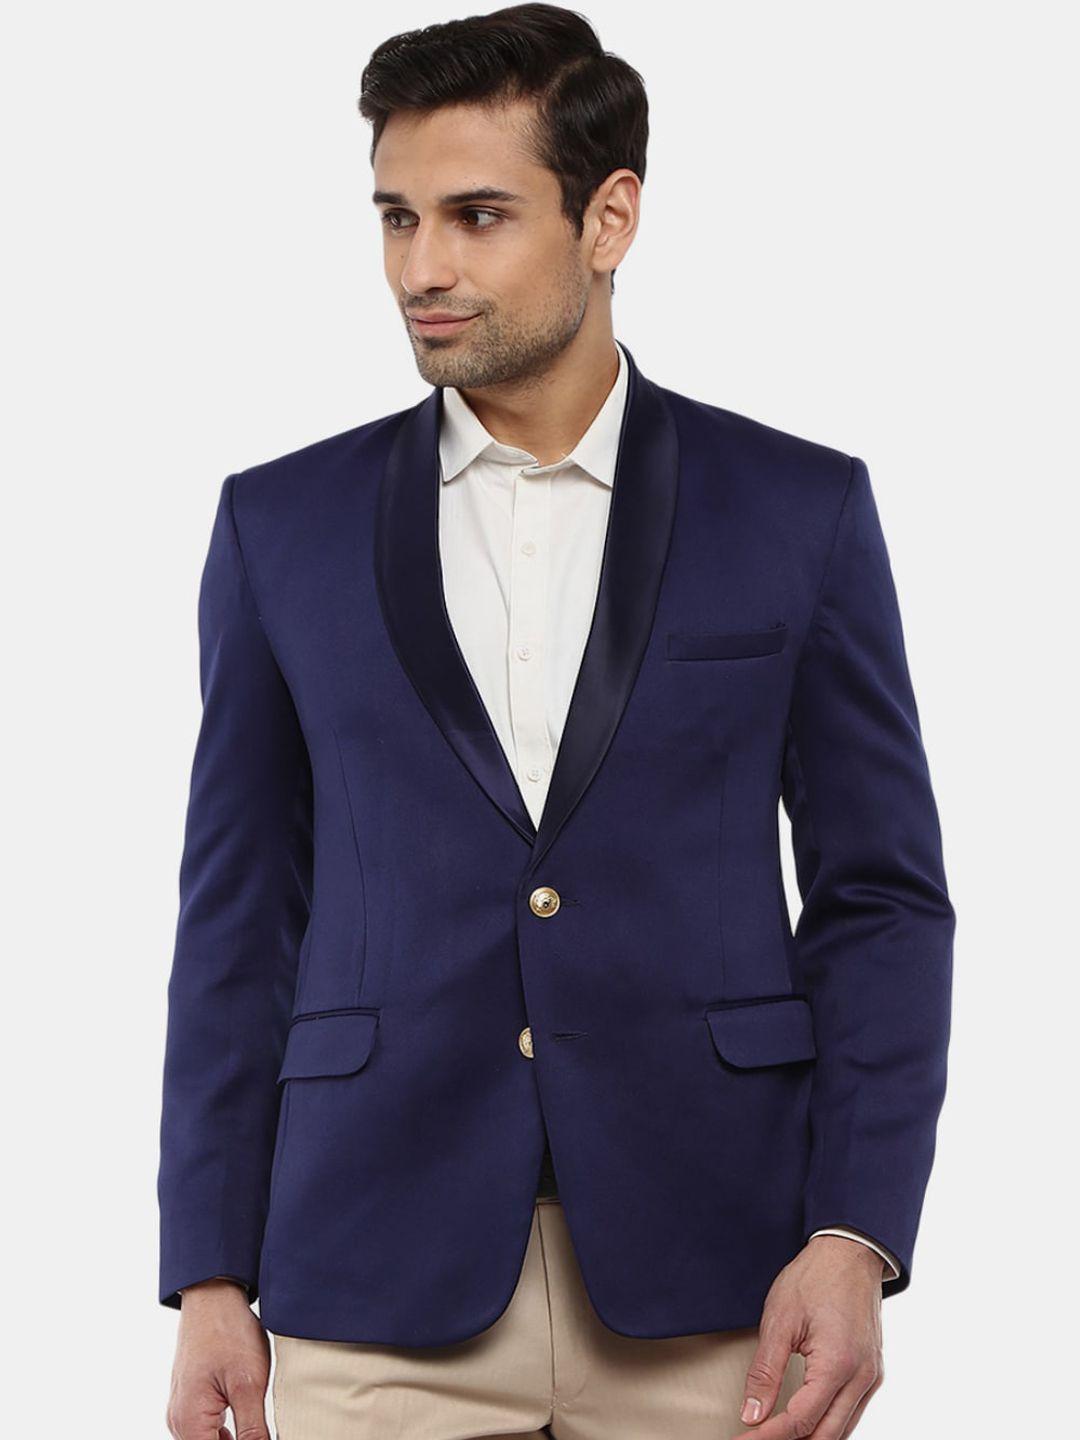 v-mart men navy blue solid formal blazer